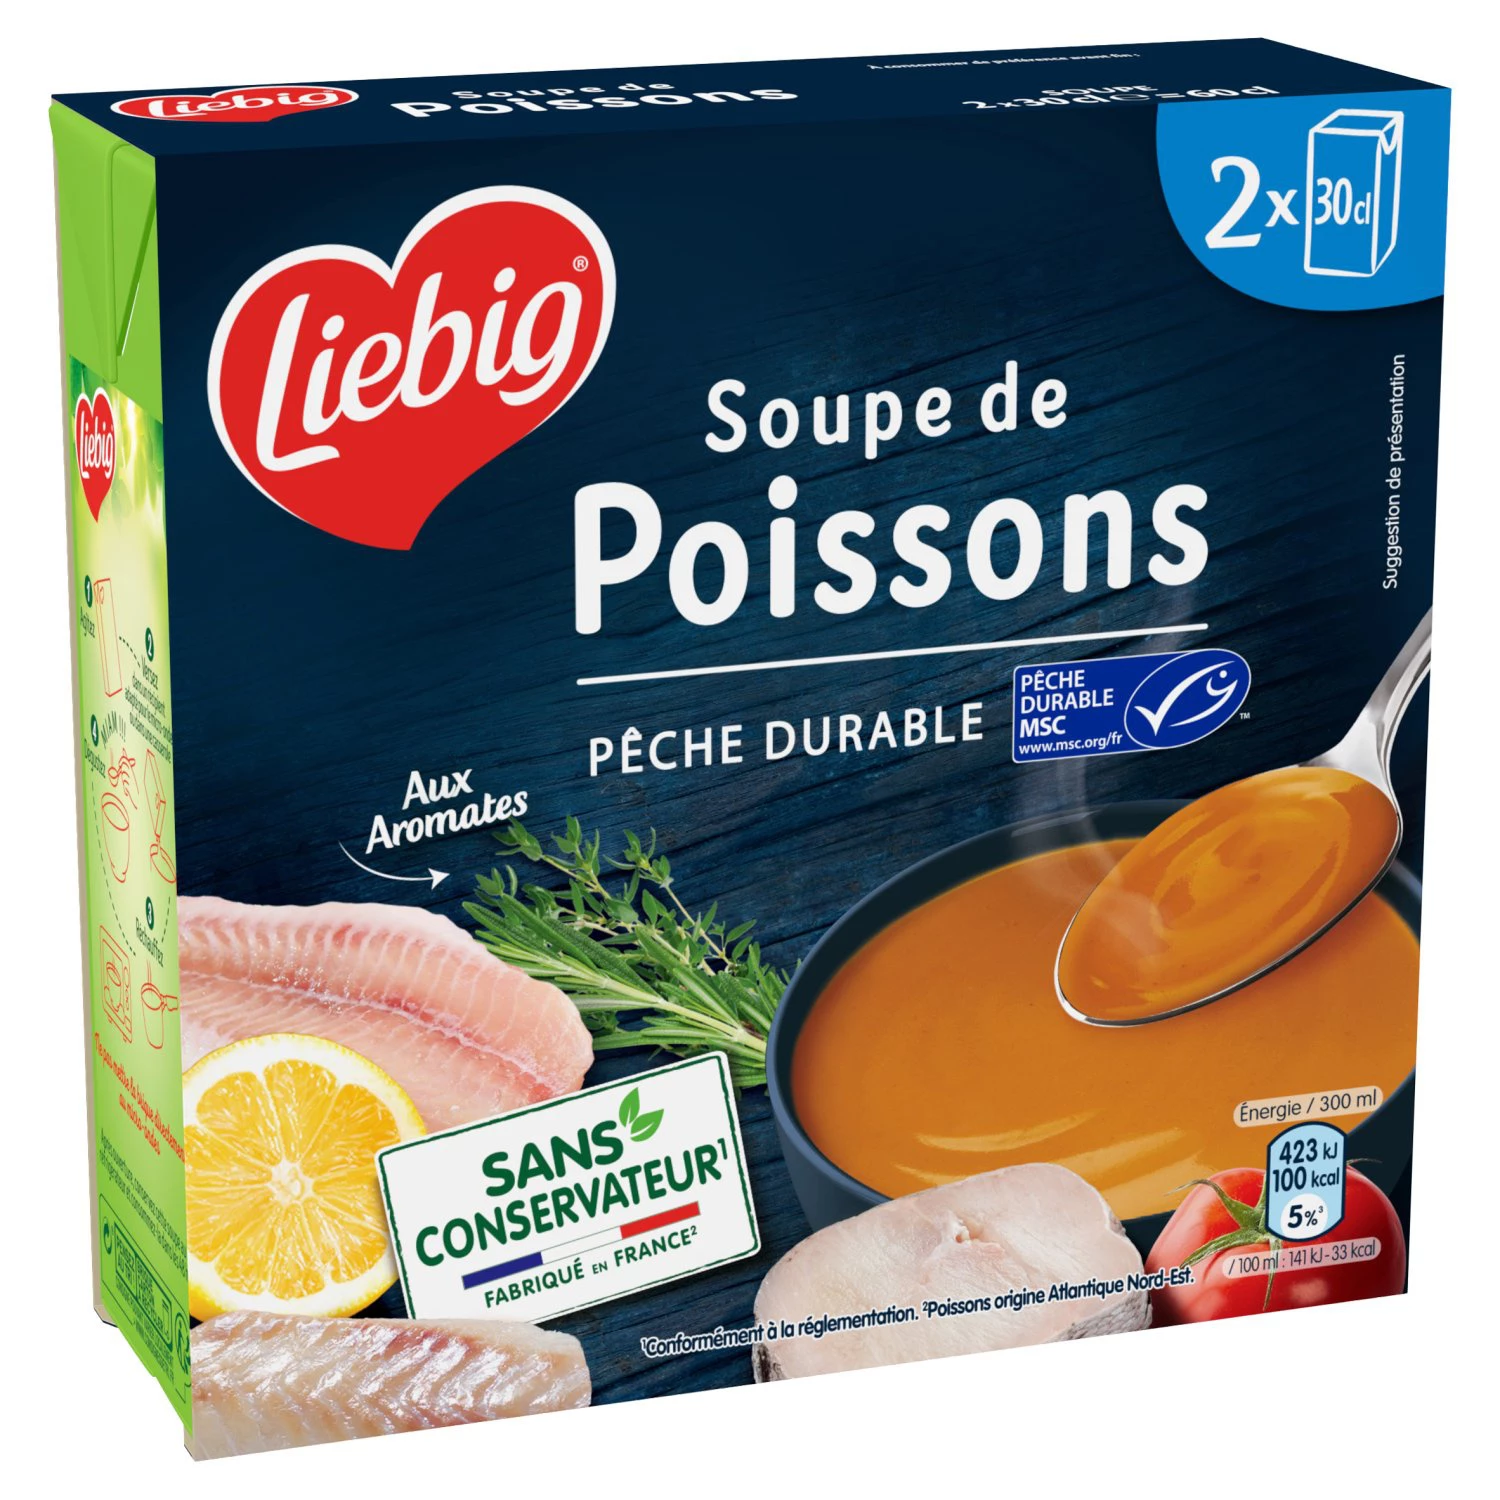 Soupe de Poissons, 2X30cl -LIEBIG